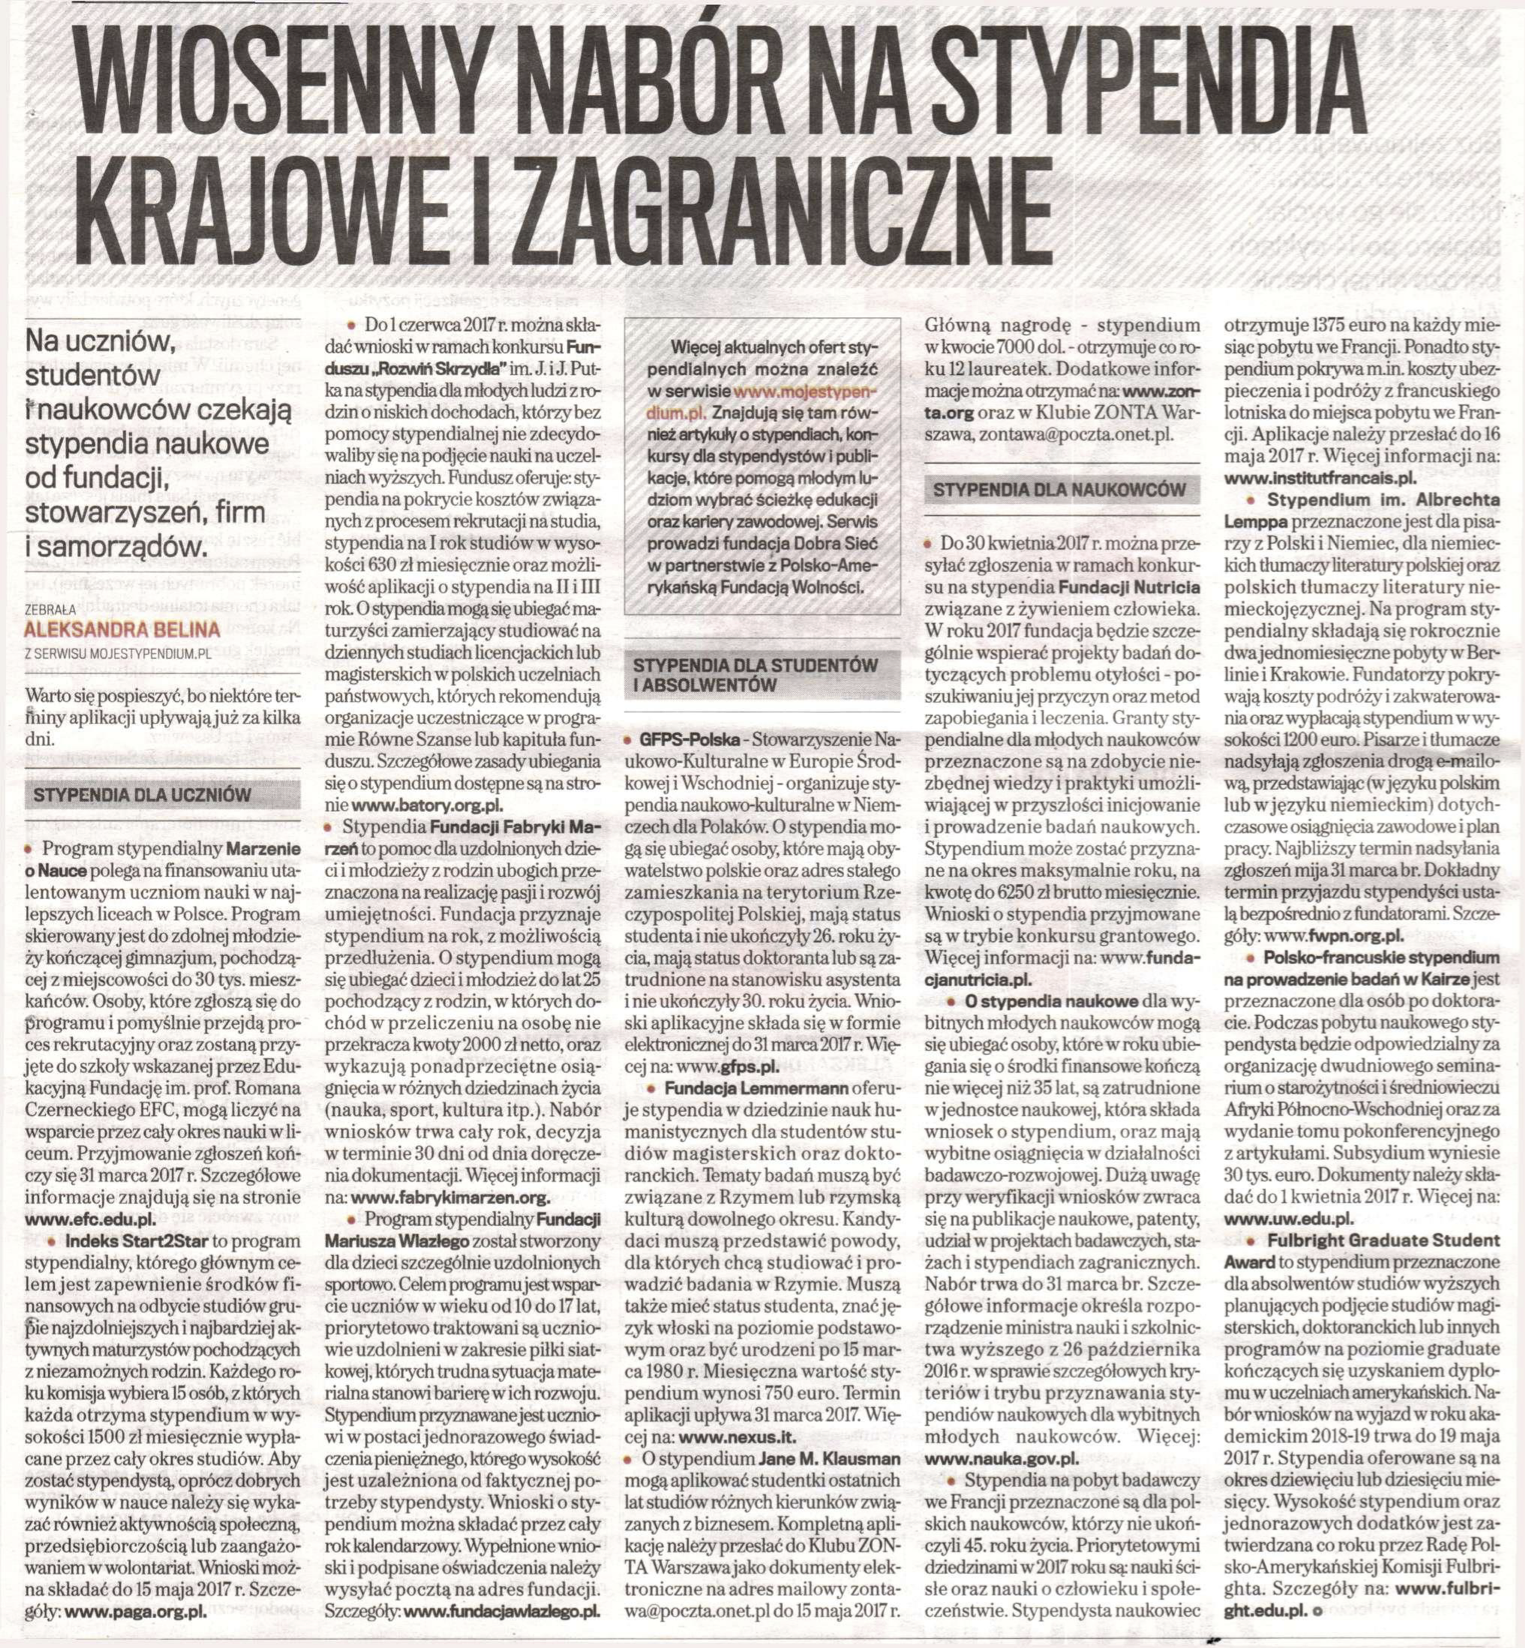 Gazeta Wyborcza. Wiosenny nabor na stypendia krajowe i zagraniczne